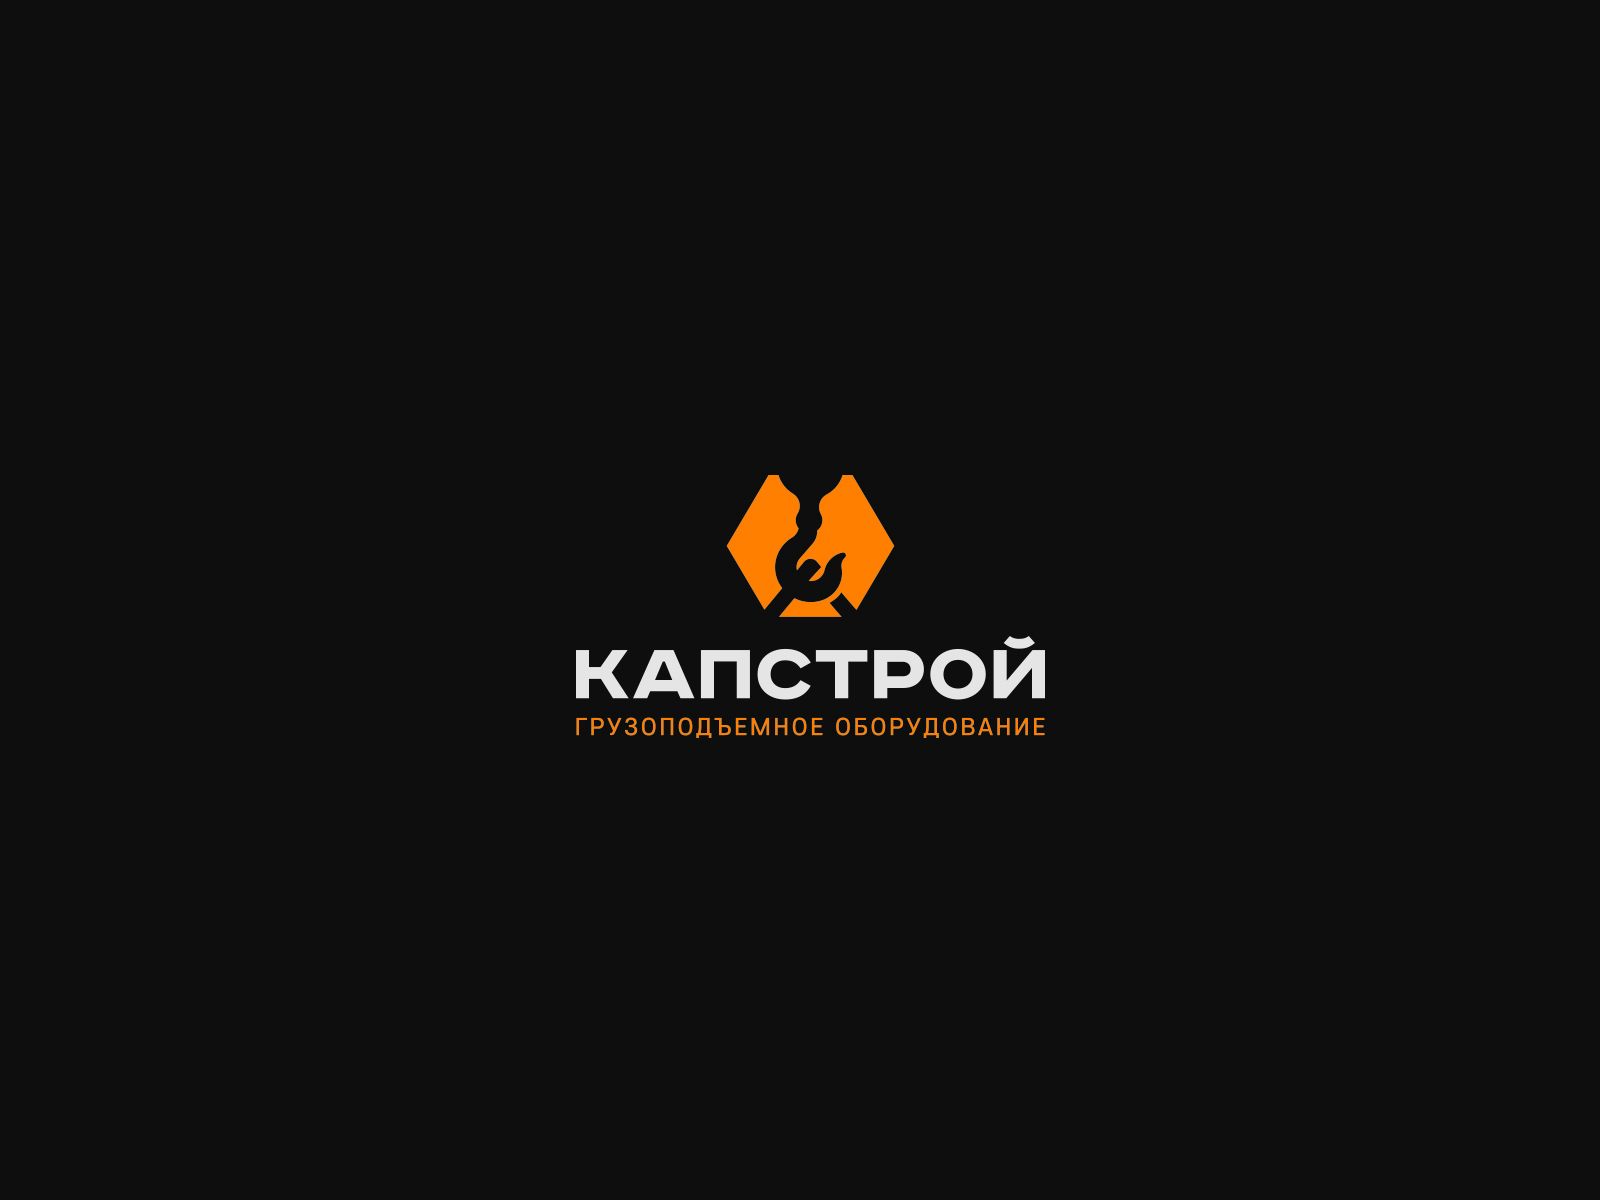 Лого и фирменный стиль для Капстрой  - дизайнер U4po4mak